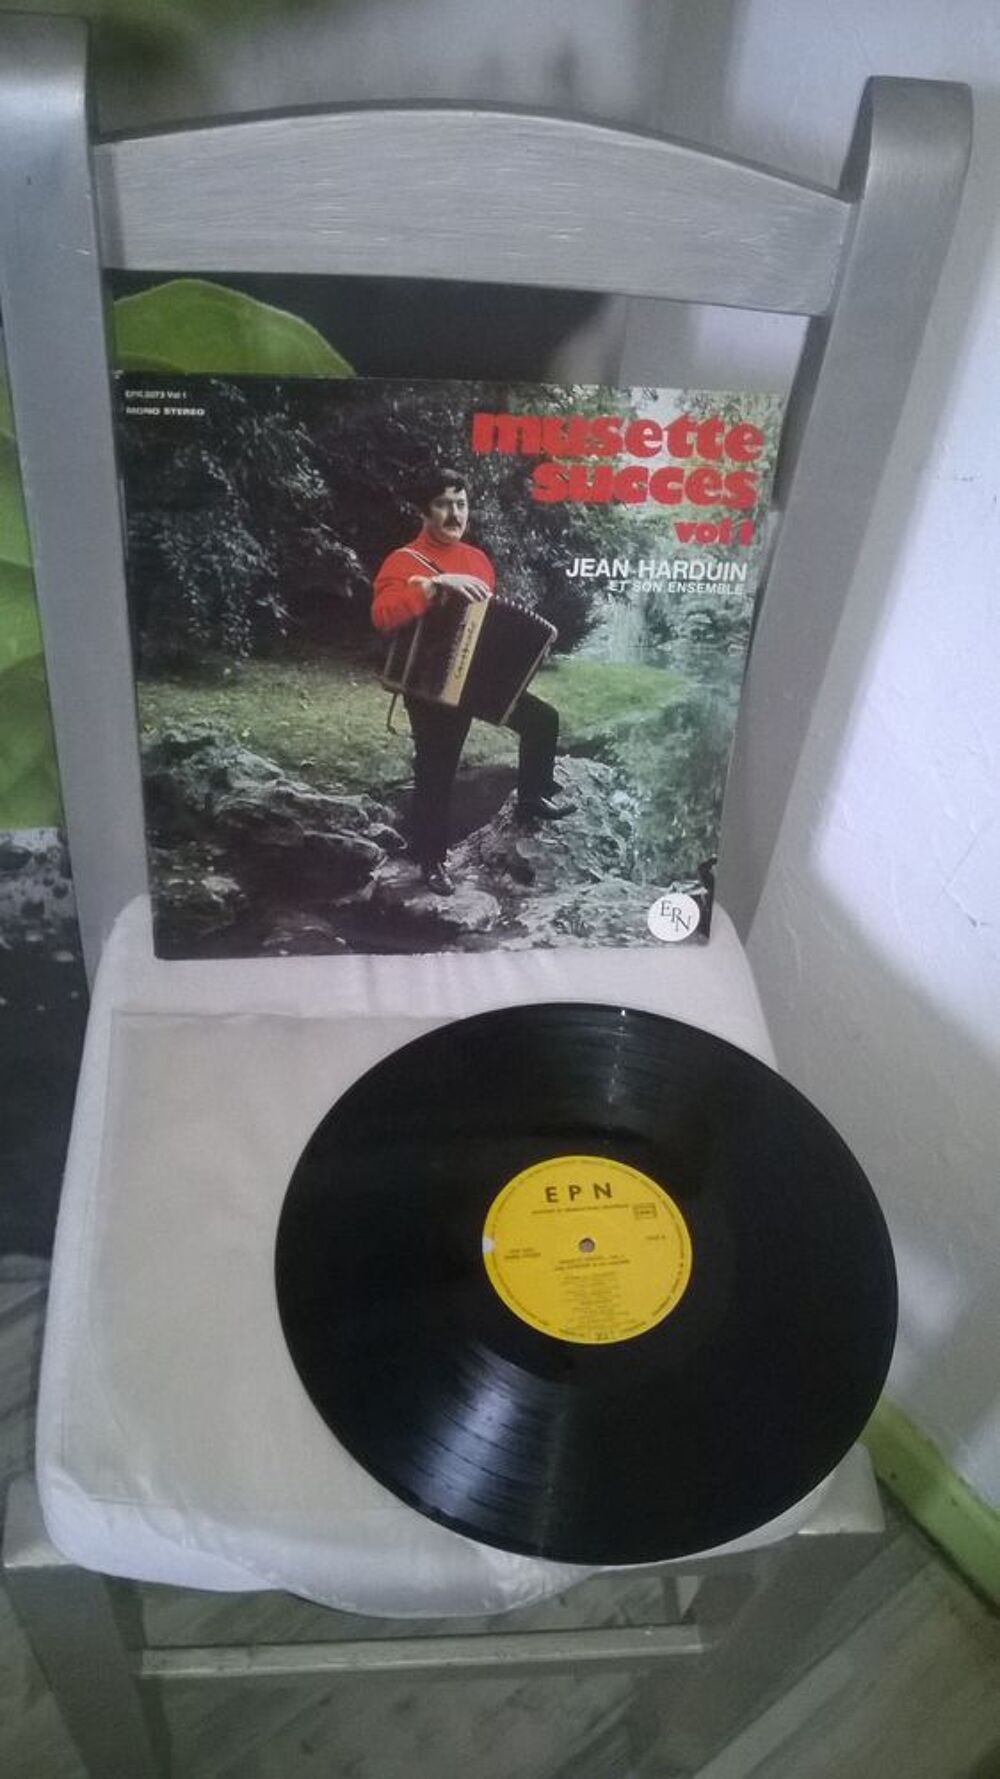 Vinyle Jean Harduin
Musette succes Vol 1
Excellent etat
N CD et vinyles